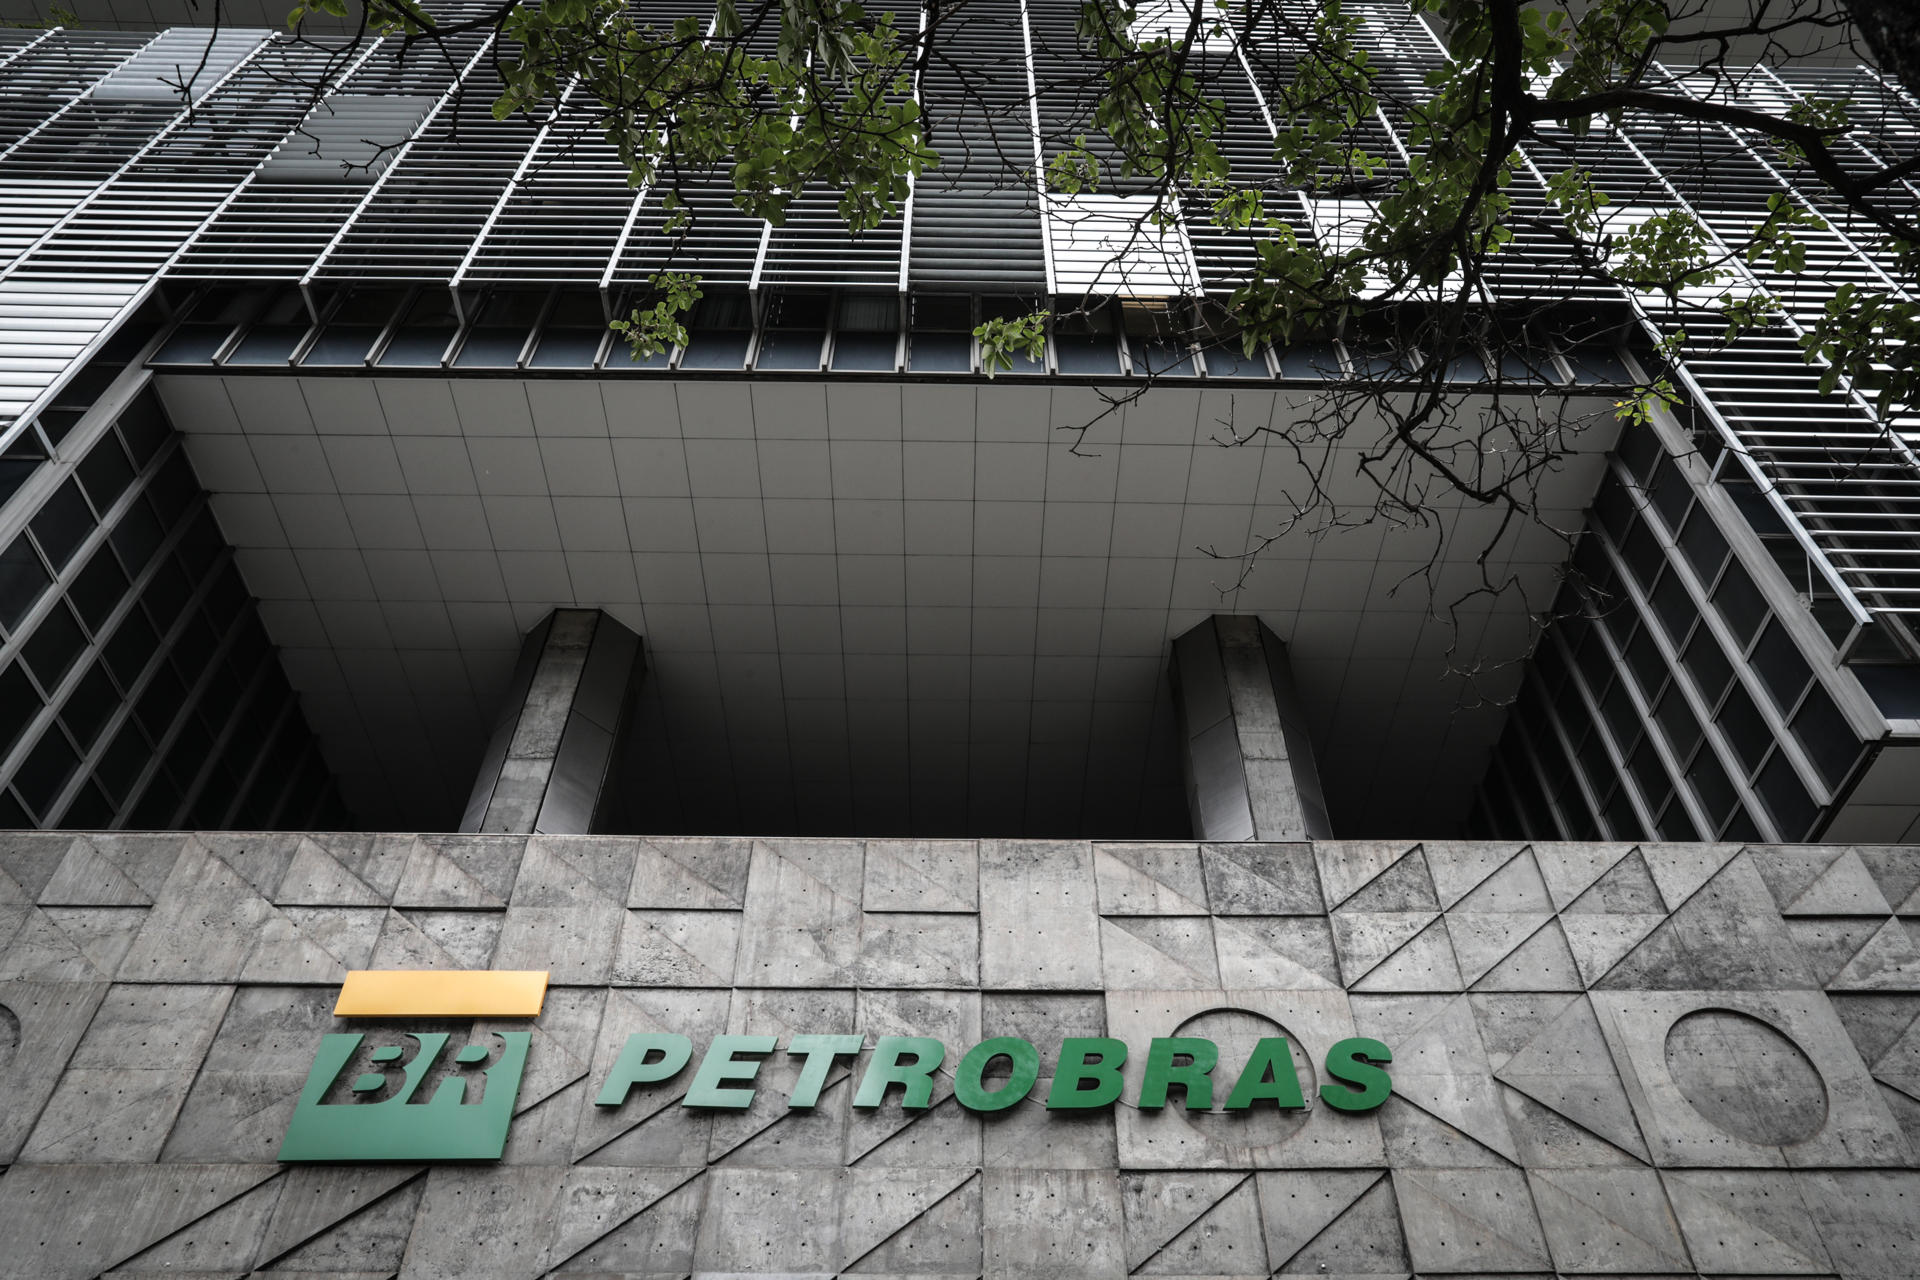 La brasileña Petrobras anunció inversiones de 102,000 millones de dólares hasta el 2028